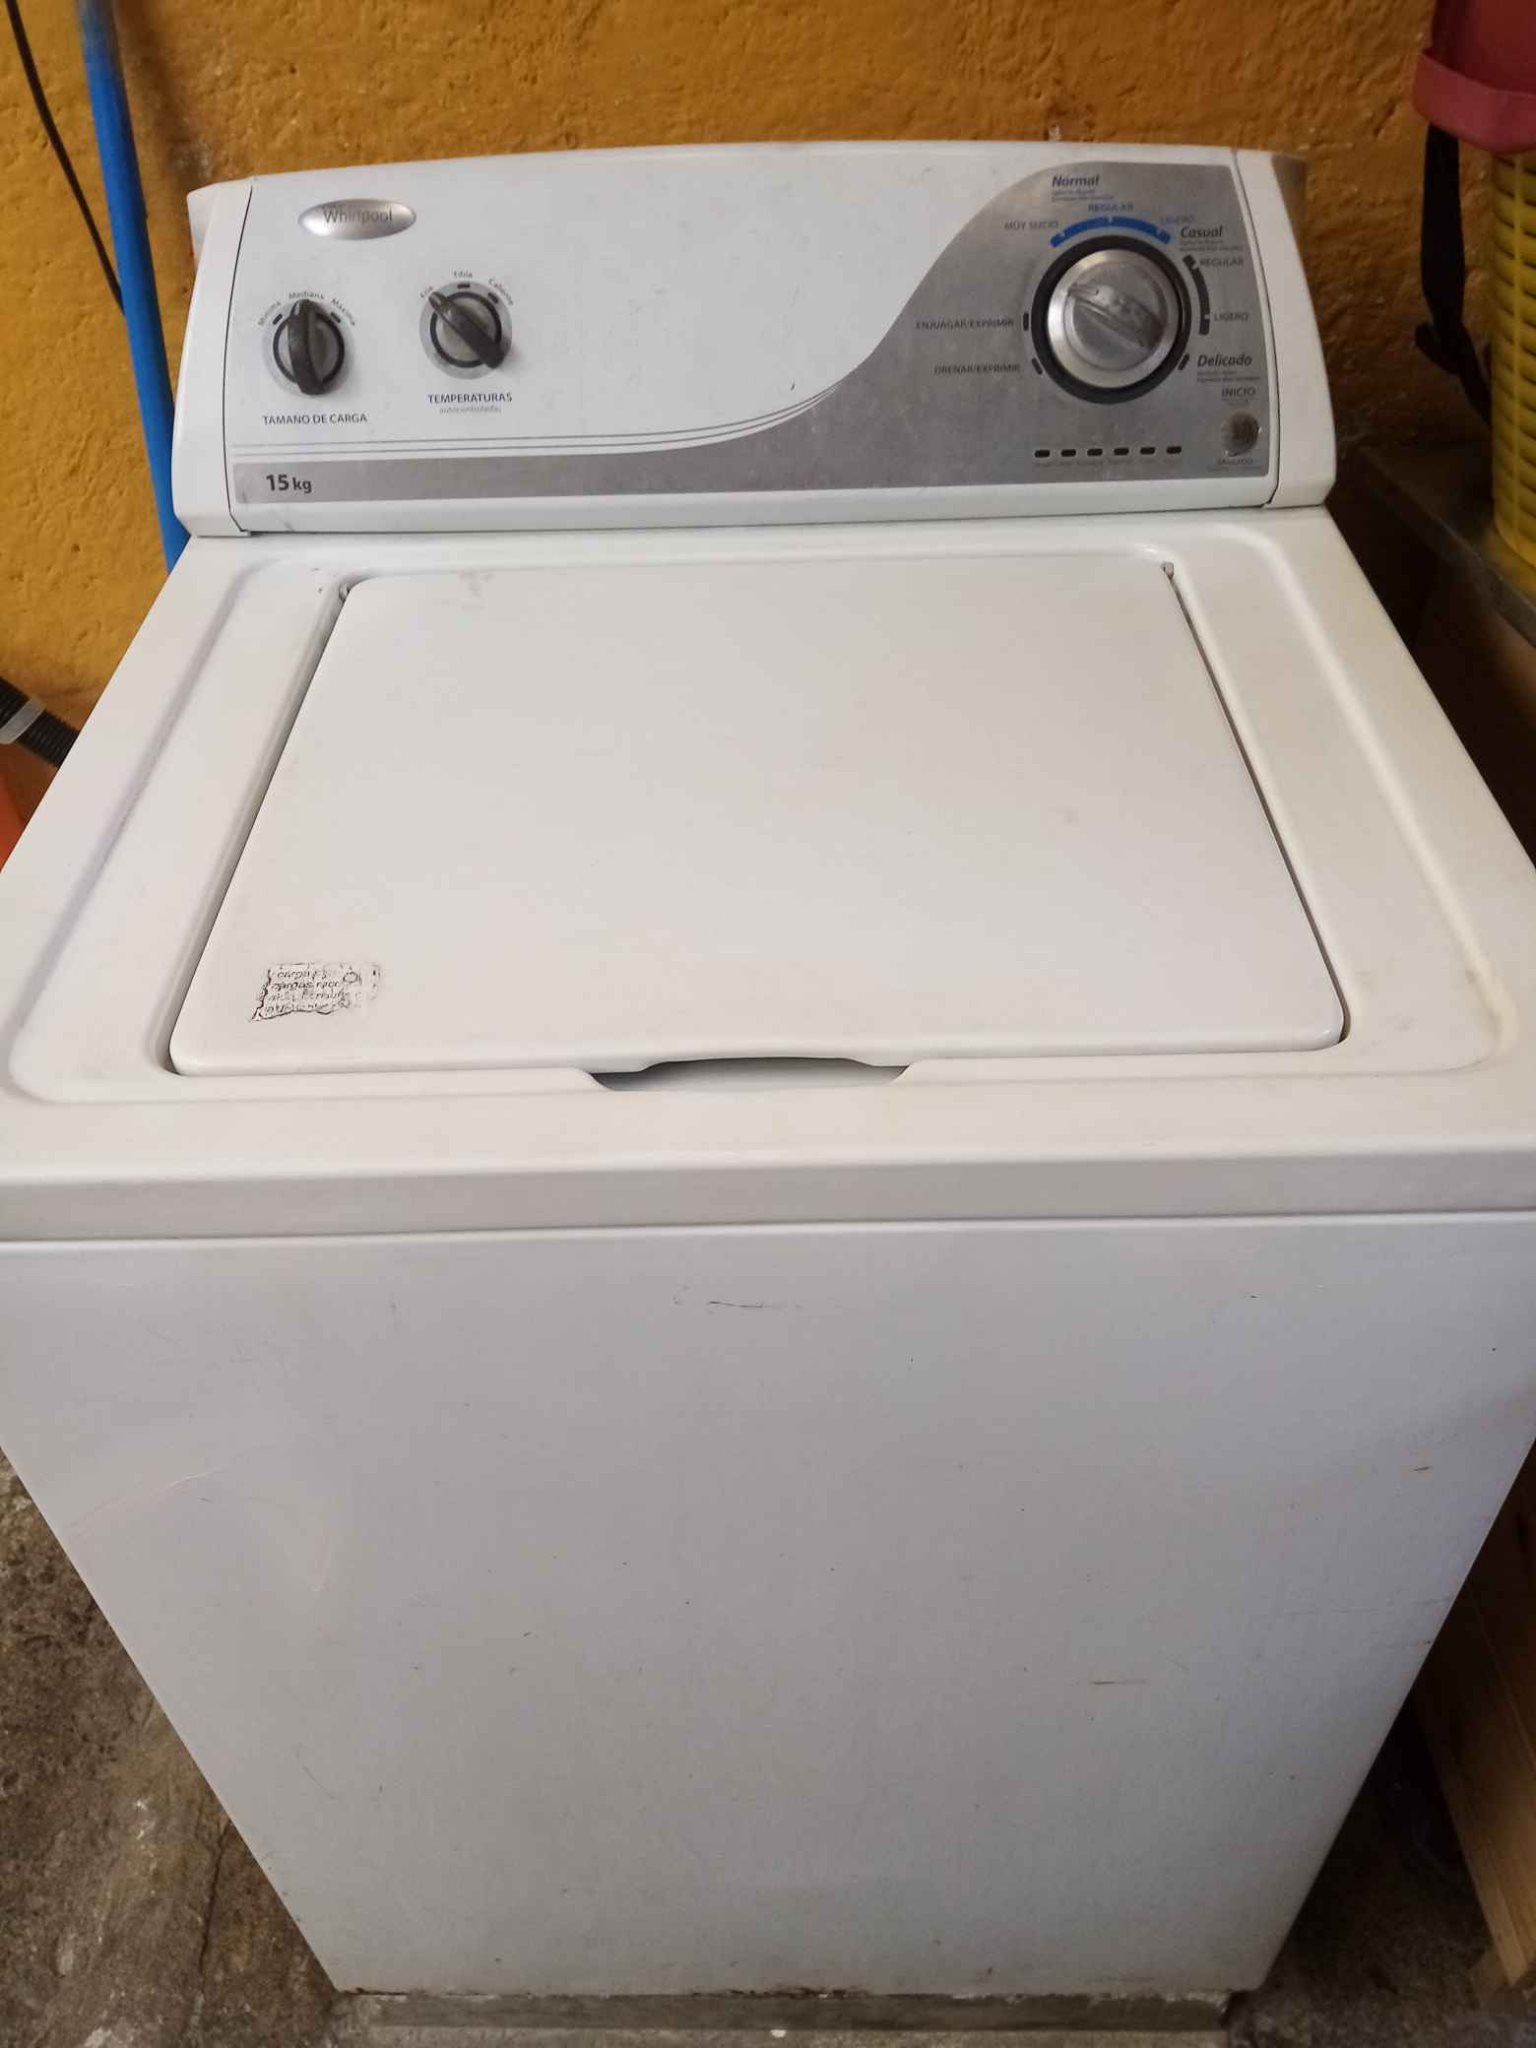 Vendo lavadora whirlpool de 15kg